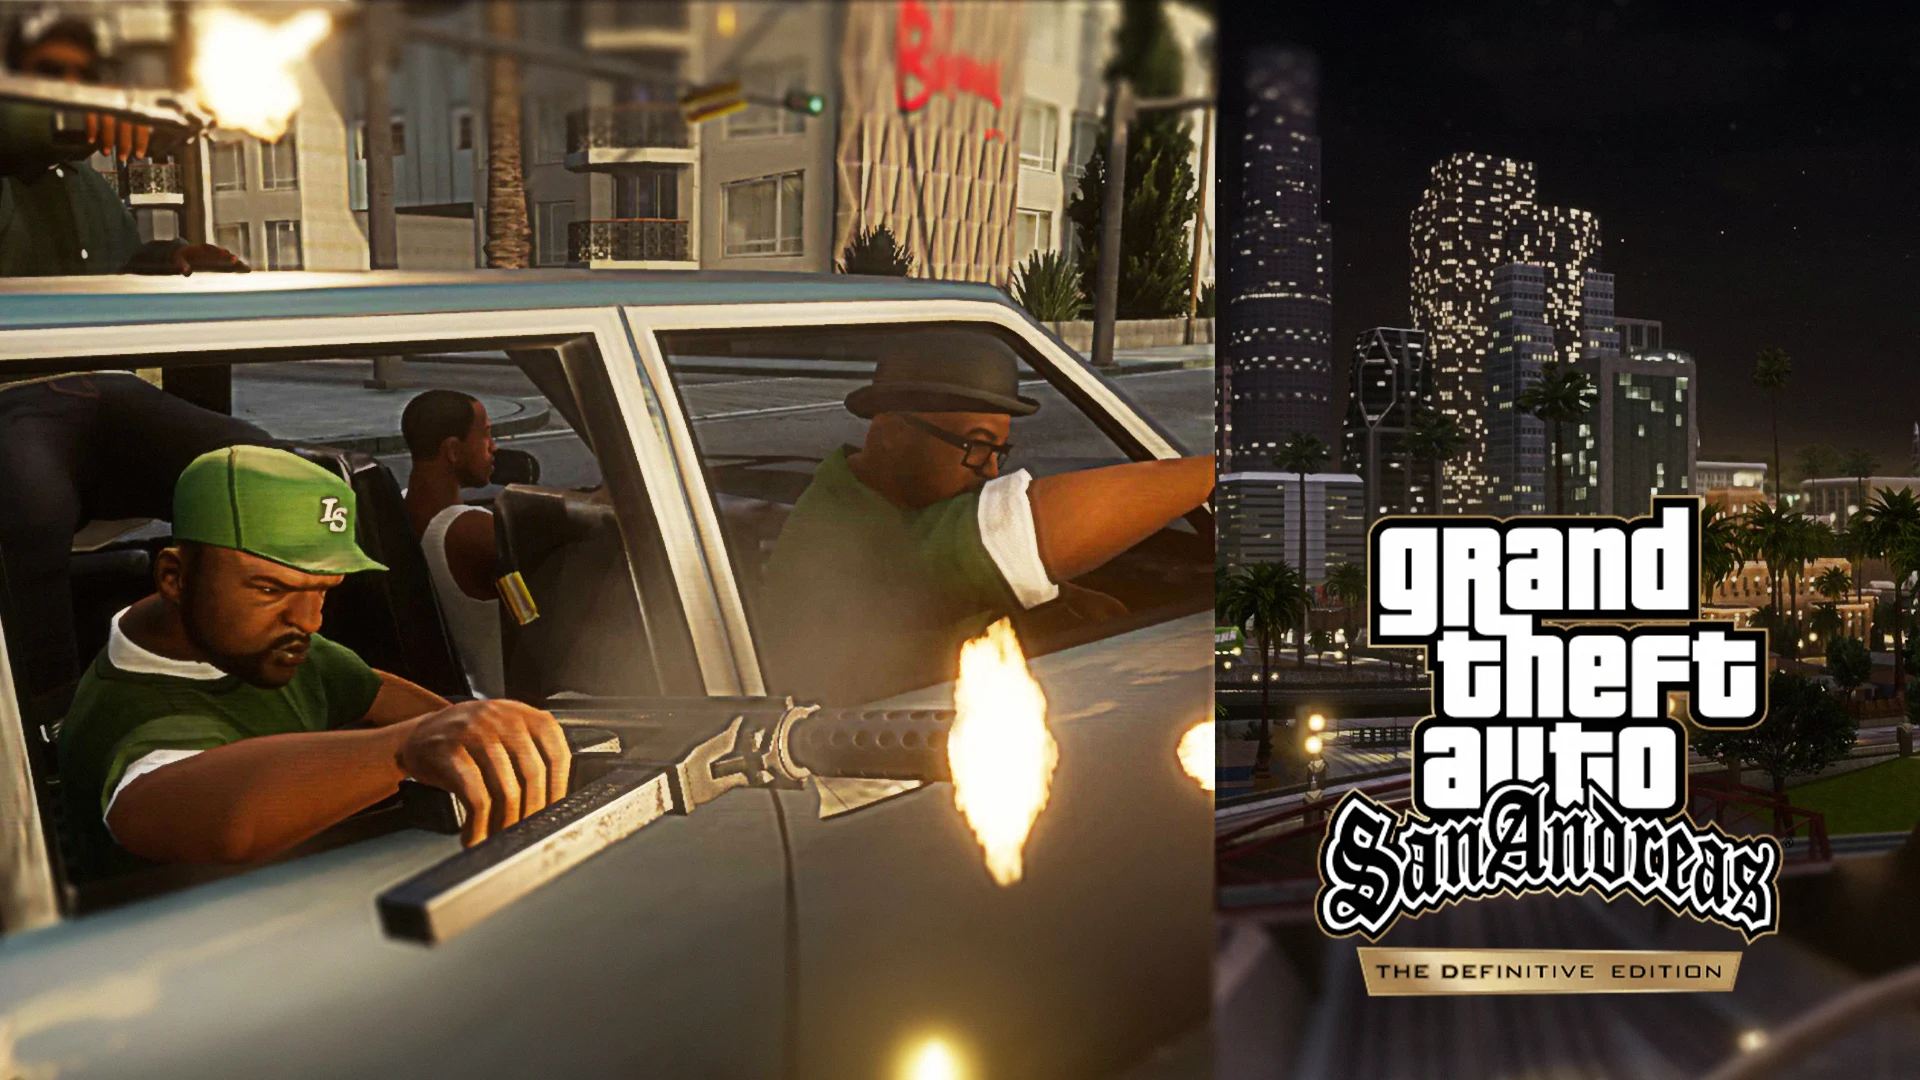 GTA Trilogy ou Grand Theft Auto: The Trilogy - The Definitive Edition será lançado em todas as plataformas disponíveis em 11 de novembro.